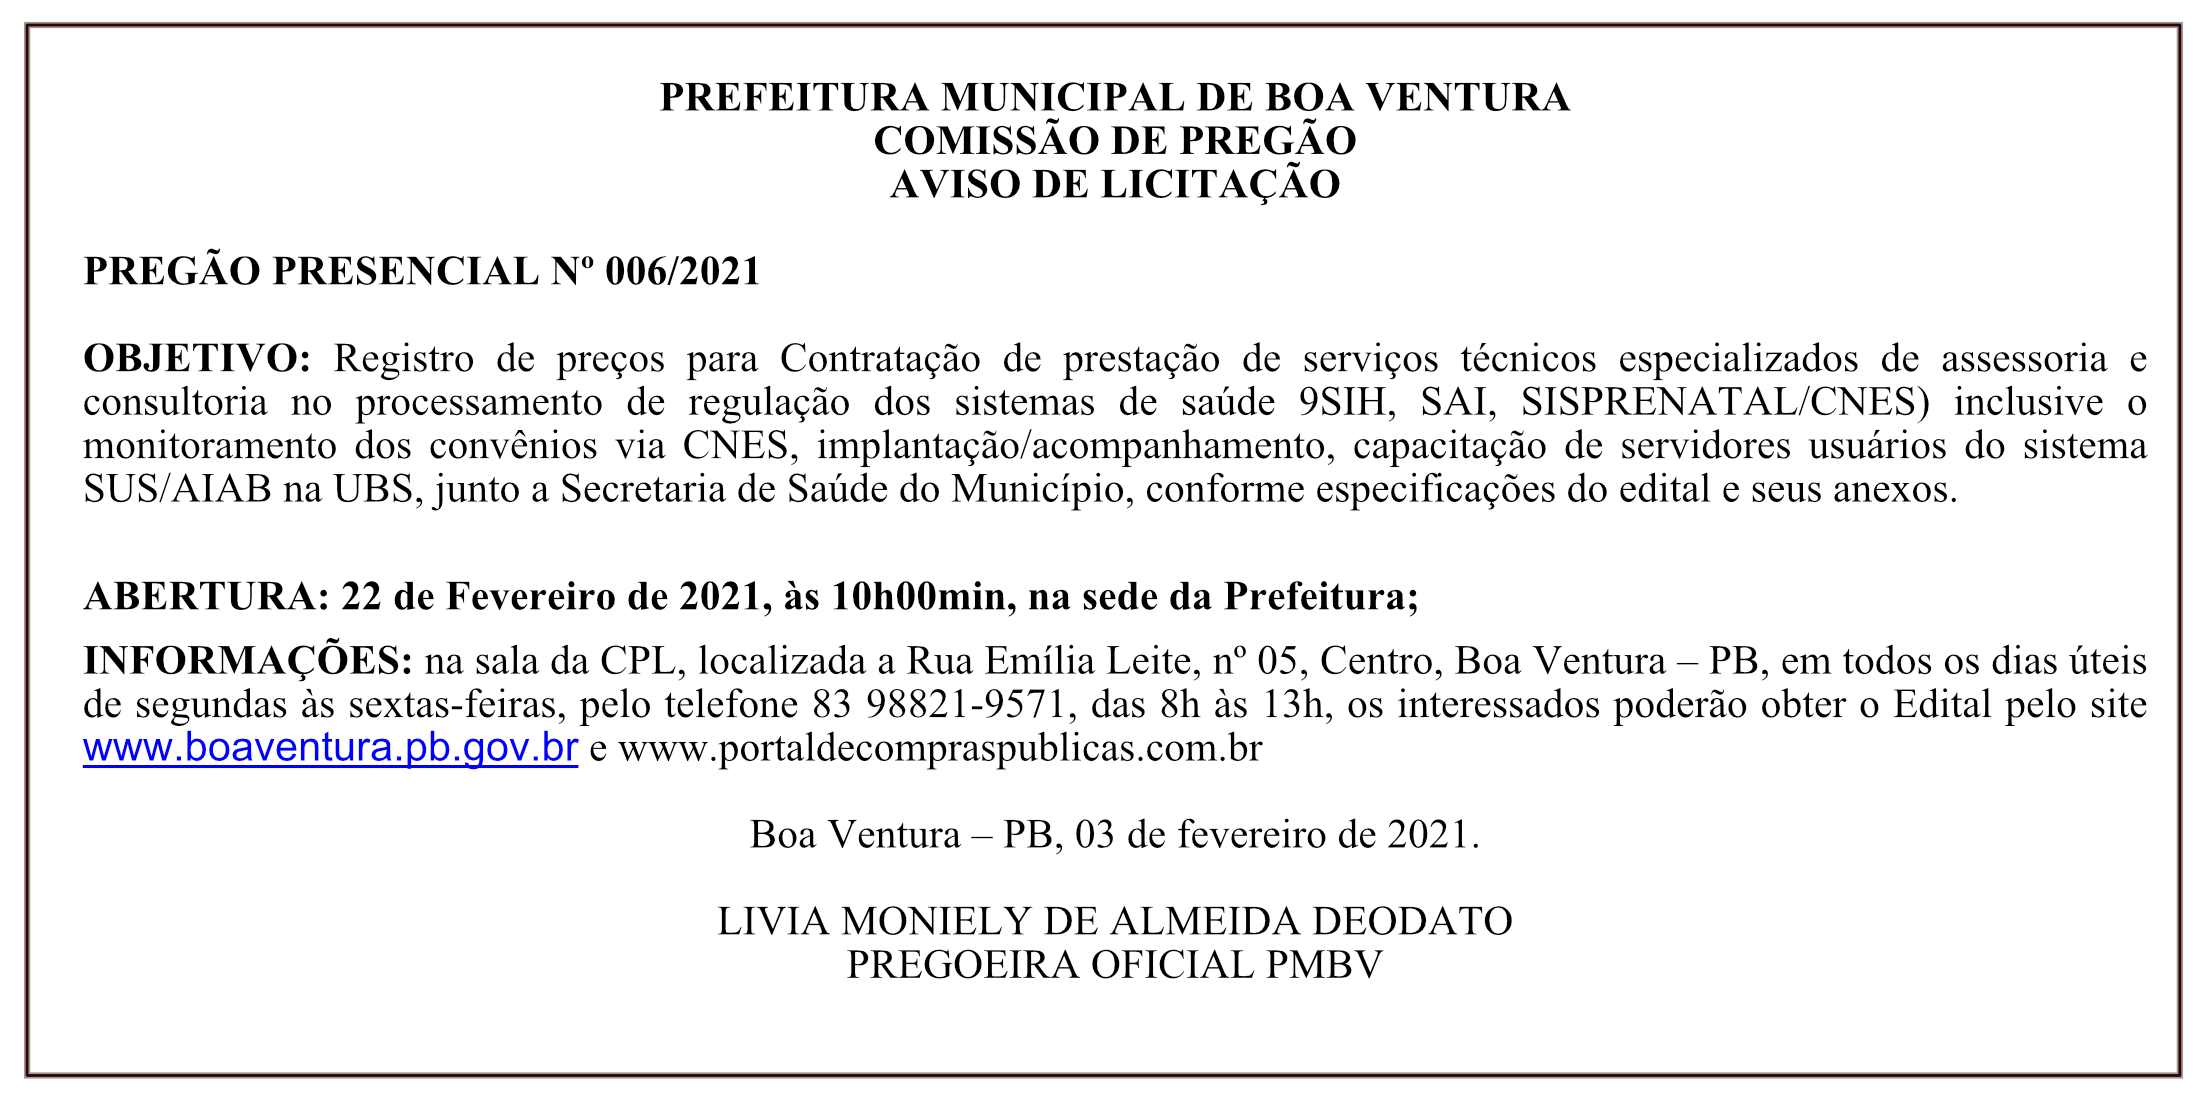 PREFEITURA MUNICIPAL DE BOA VENTURA – COMISSÃO DE PREGÃO – AVISO DE LICITAÇÃO – PREGÃO PRESENCIAL Nº 006/2021